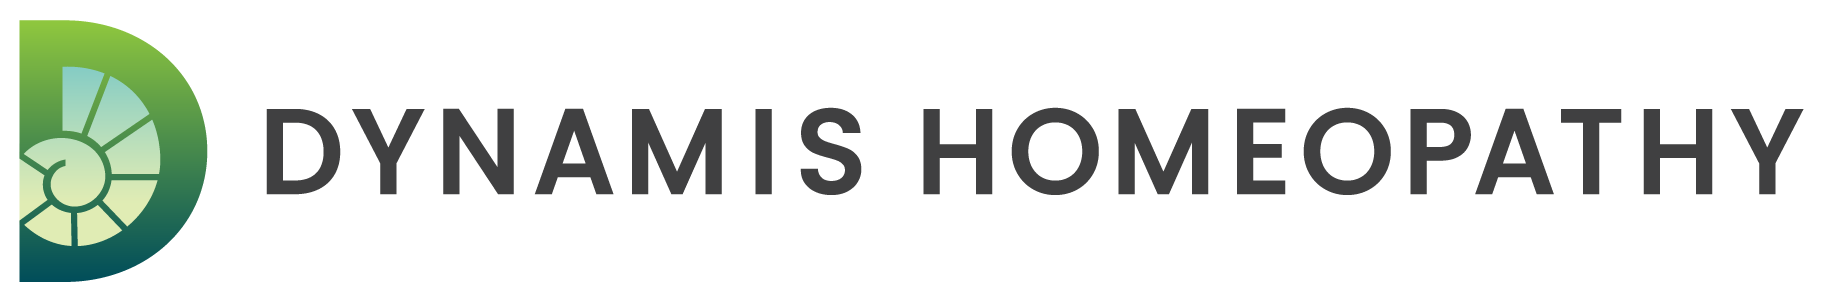 Dynamis Homeopathy logo